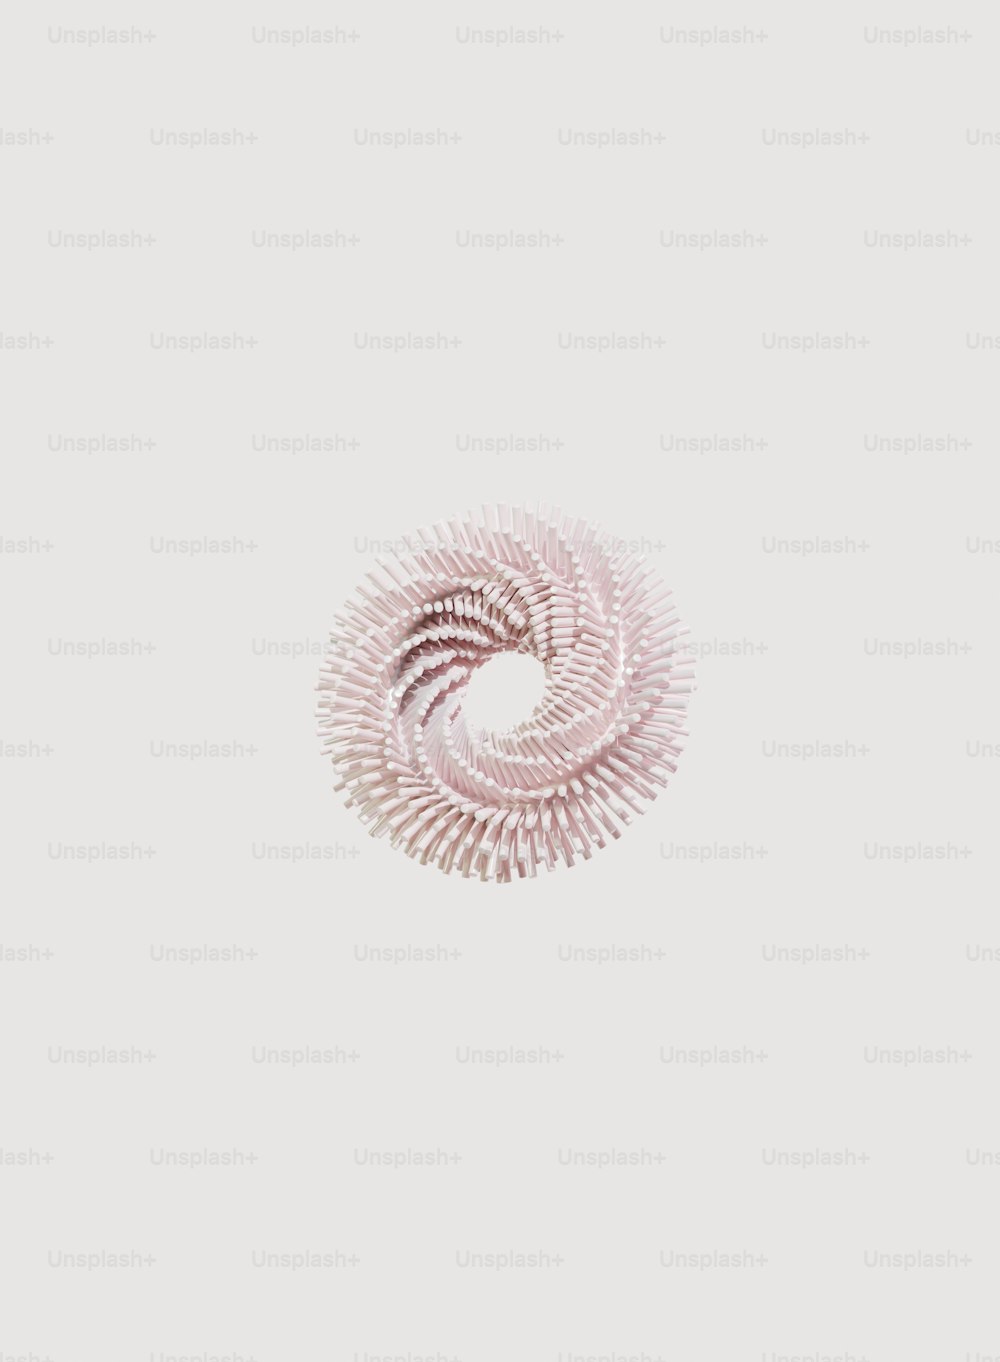 Un objet en spirale est représenté sur un fond blanc